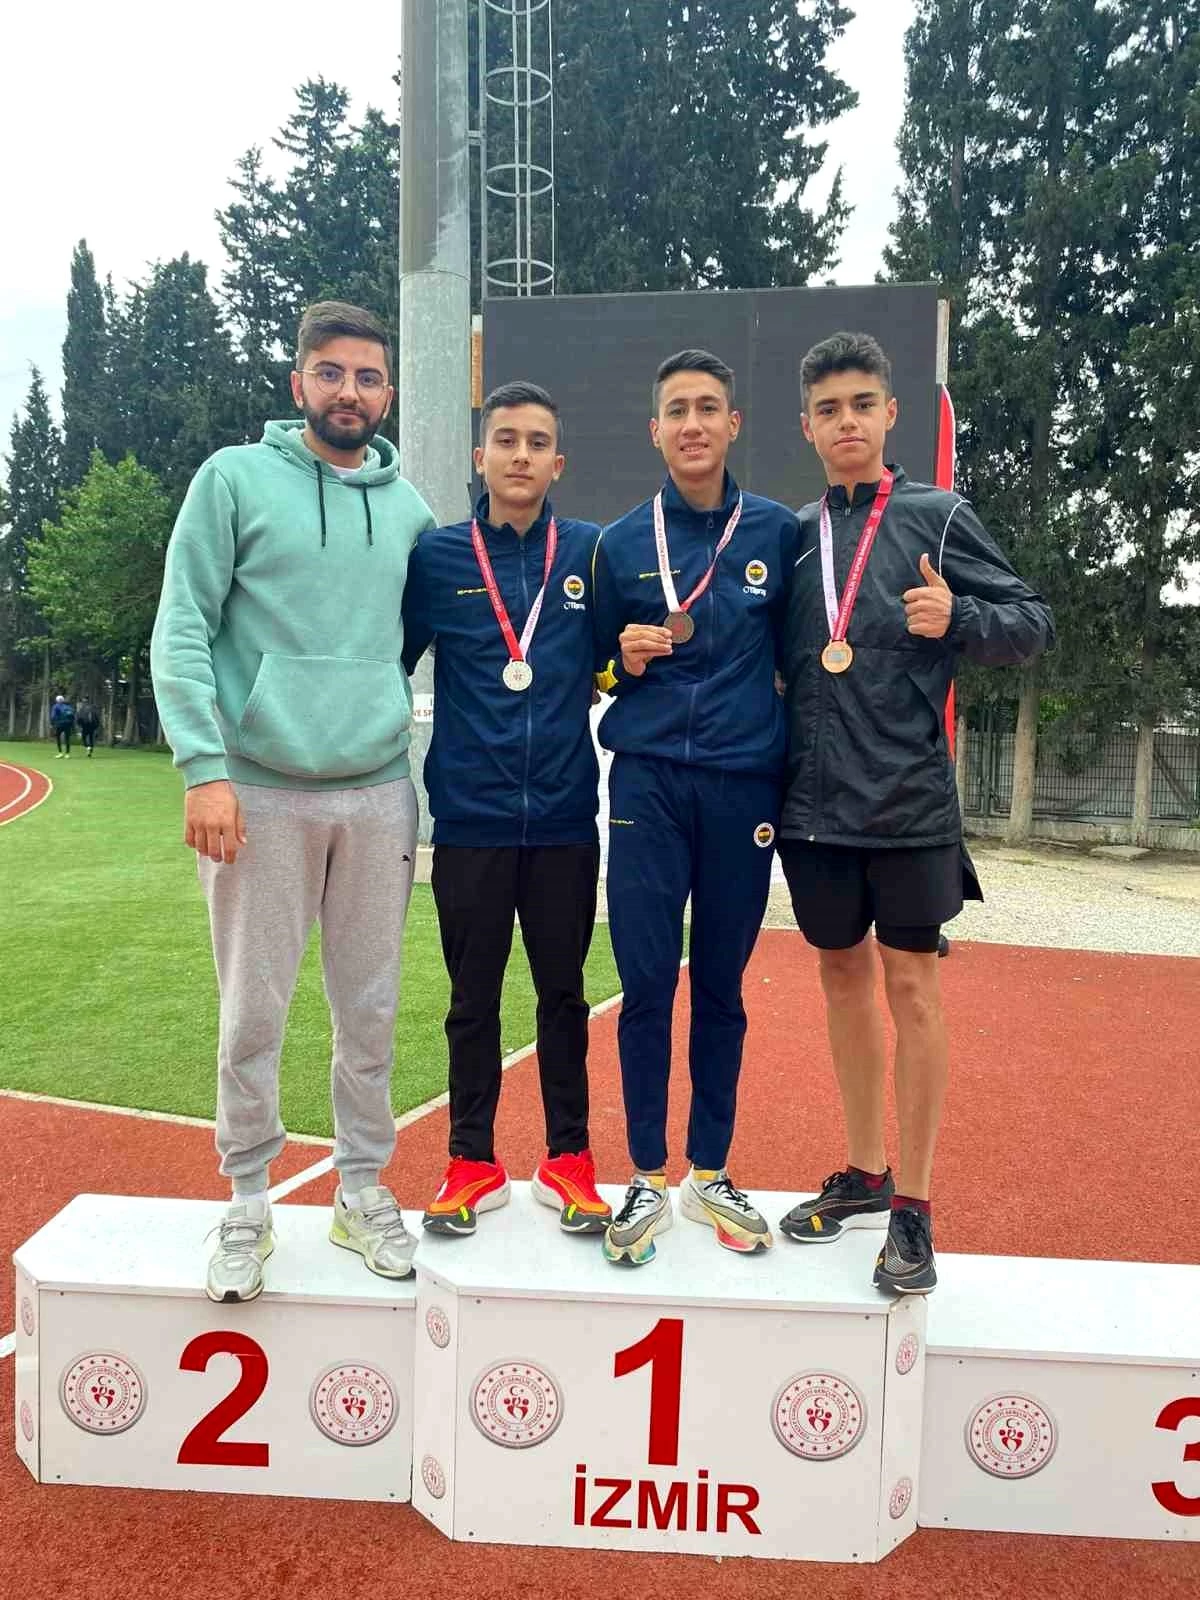 Nevşehir Belediyesi Gençlik ve Spor Kulübü Atletleri İzmir'de Madalyaları Topladı